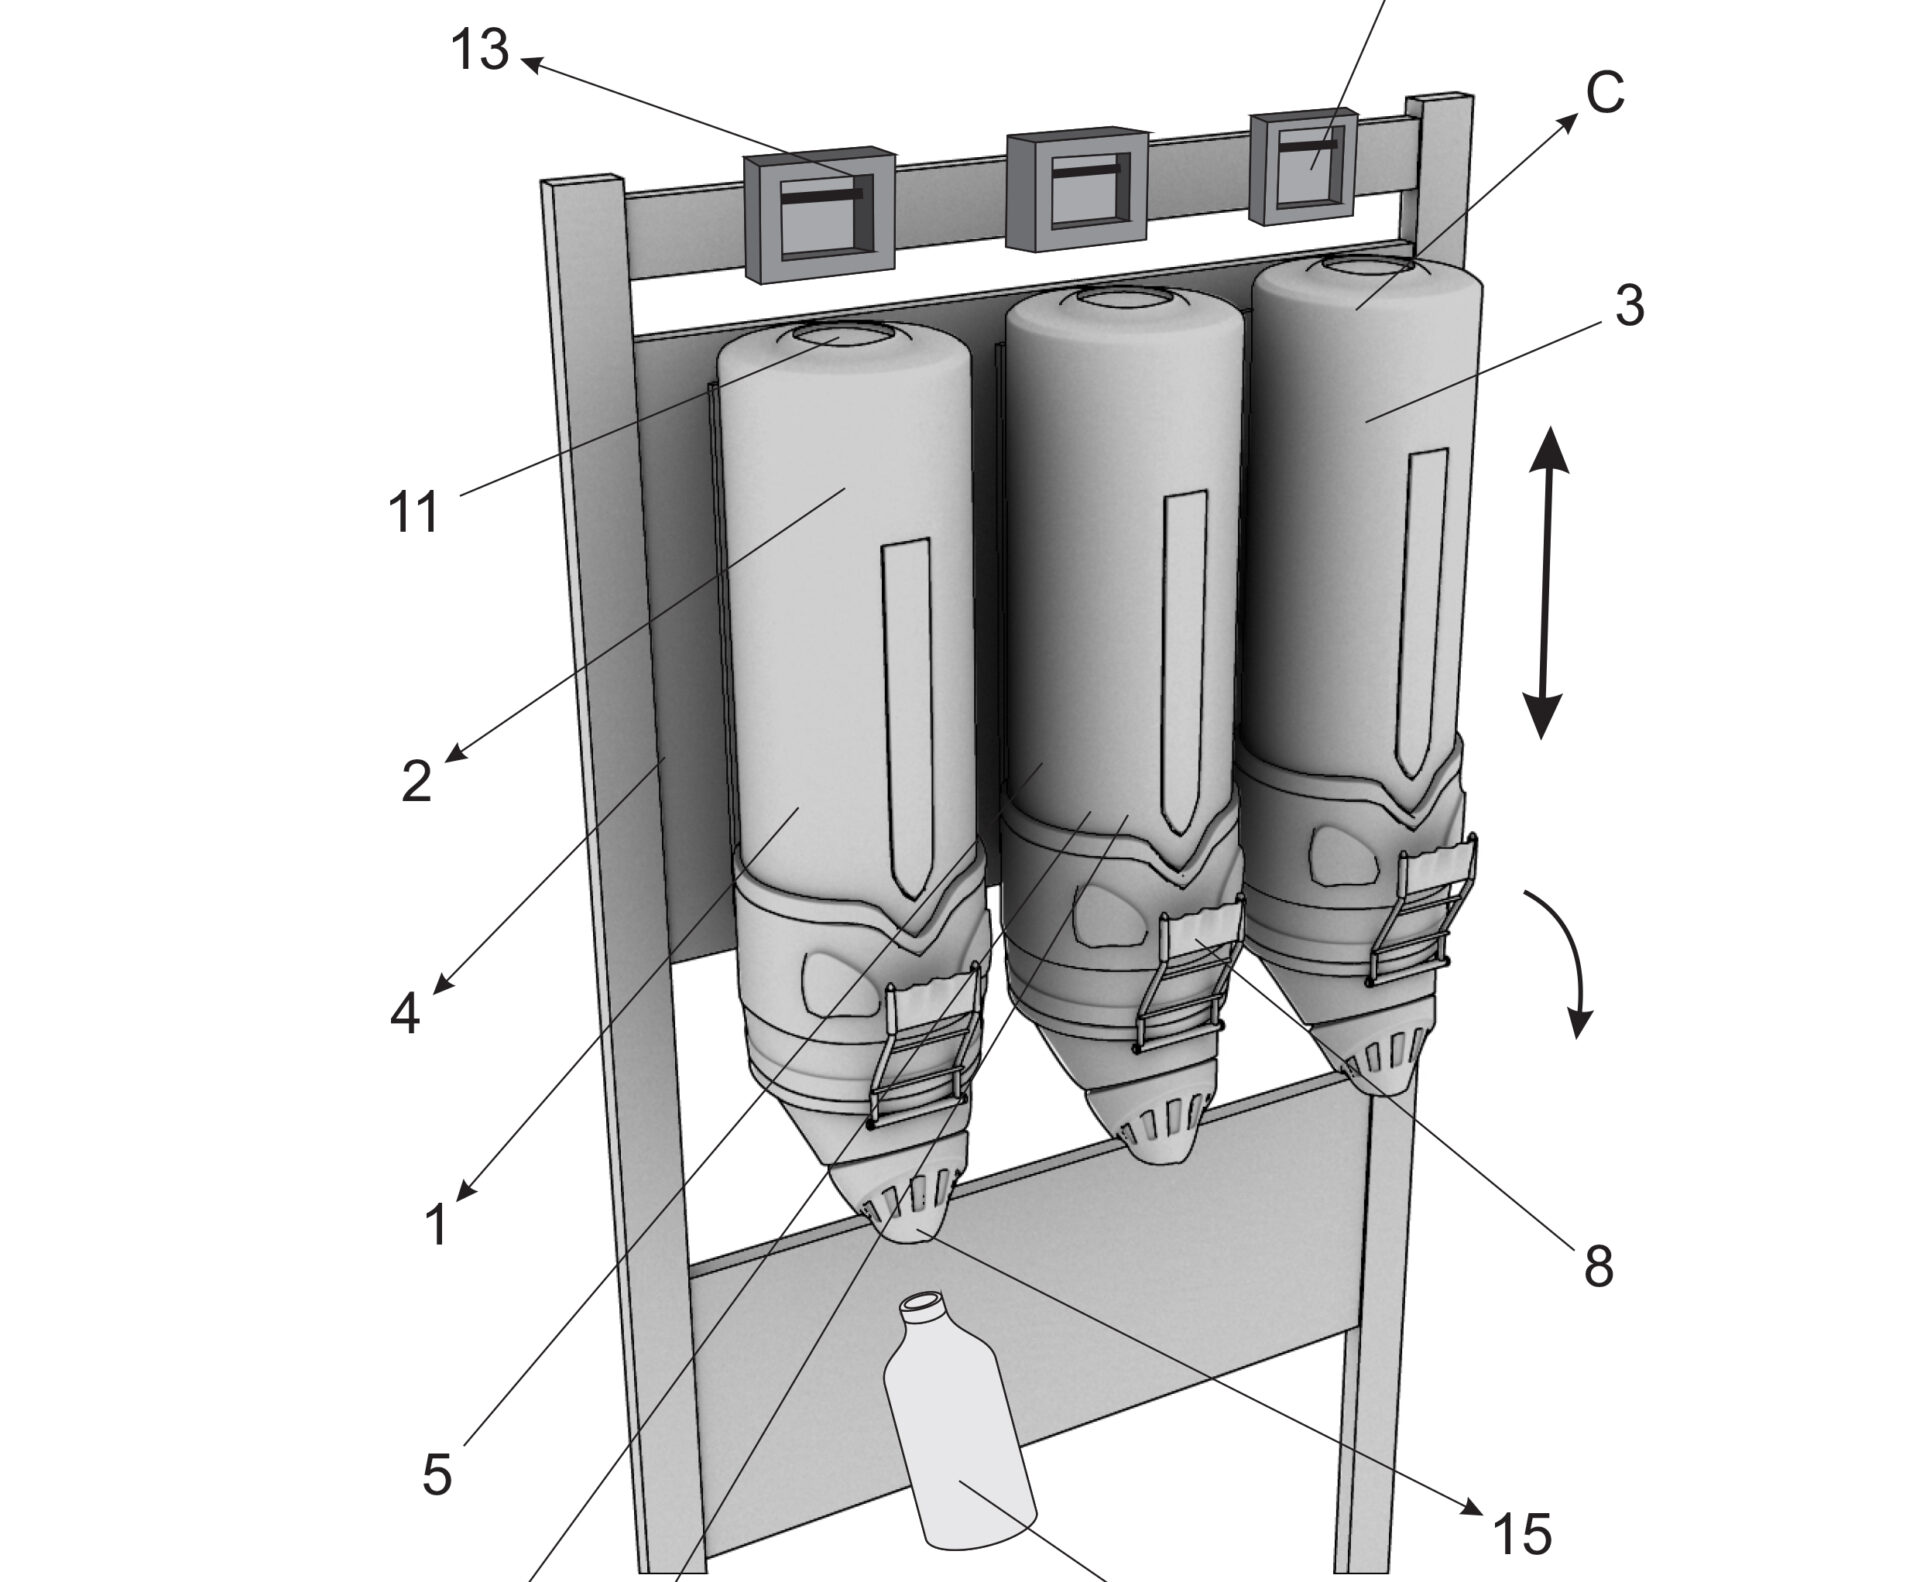 patente do dispenser com sistema de refil e abastecimento